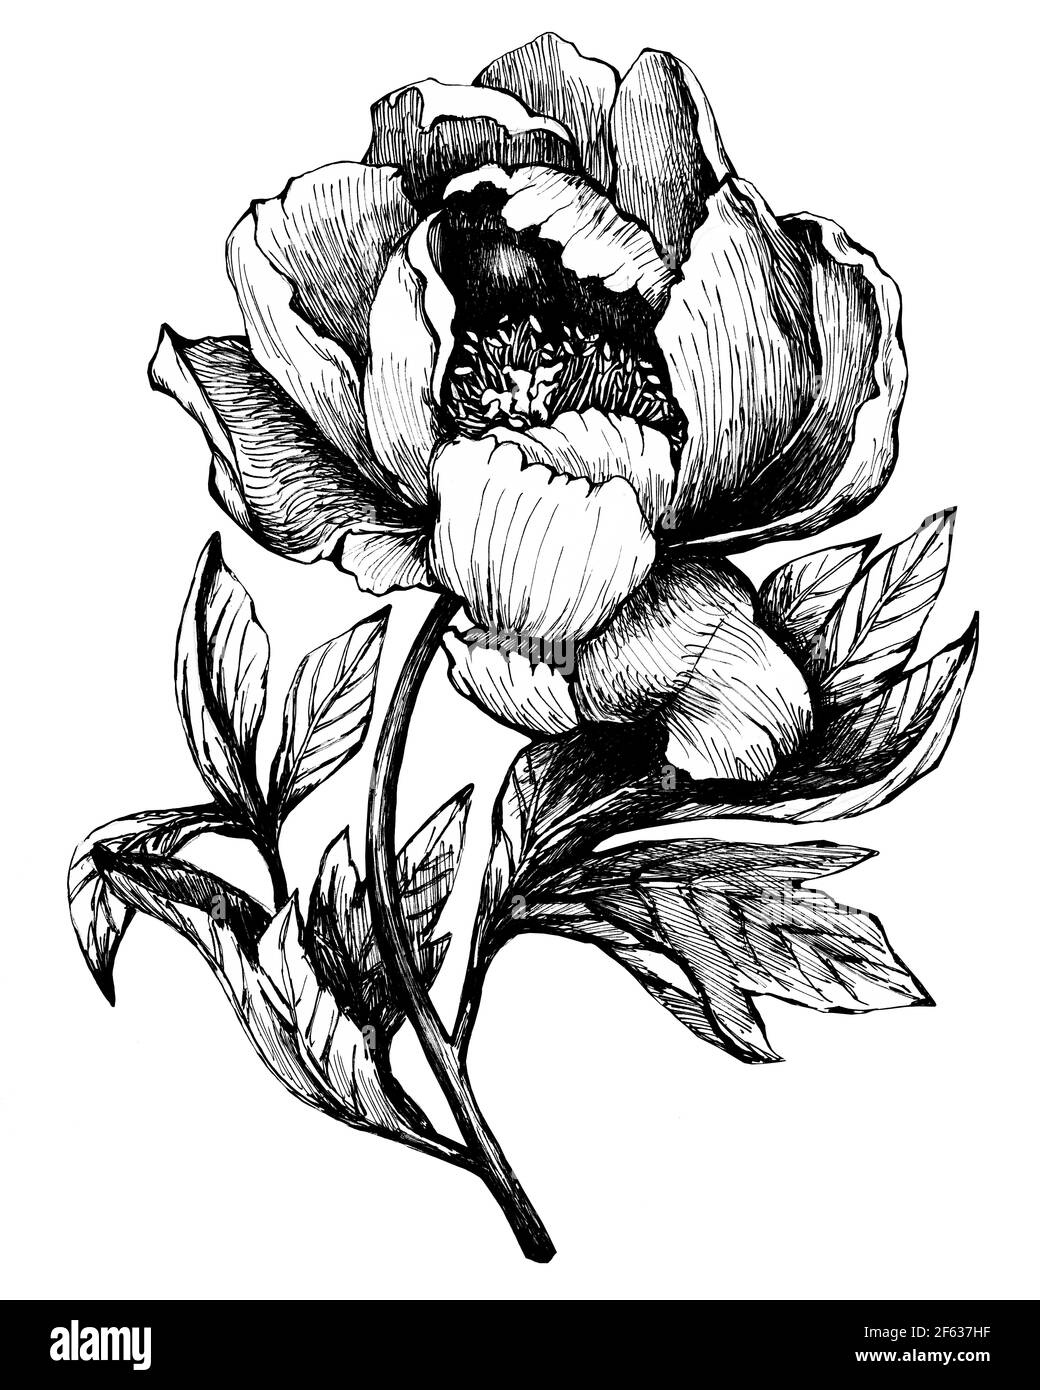 La branche de la pivoine à fleurs (pivoines, pivoines, paeonia), isolée sur fond blanc. Illustration graphique dessinée à la main. Banque D'Images